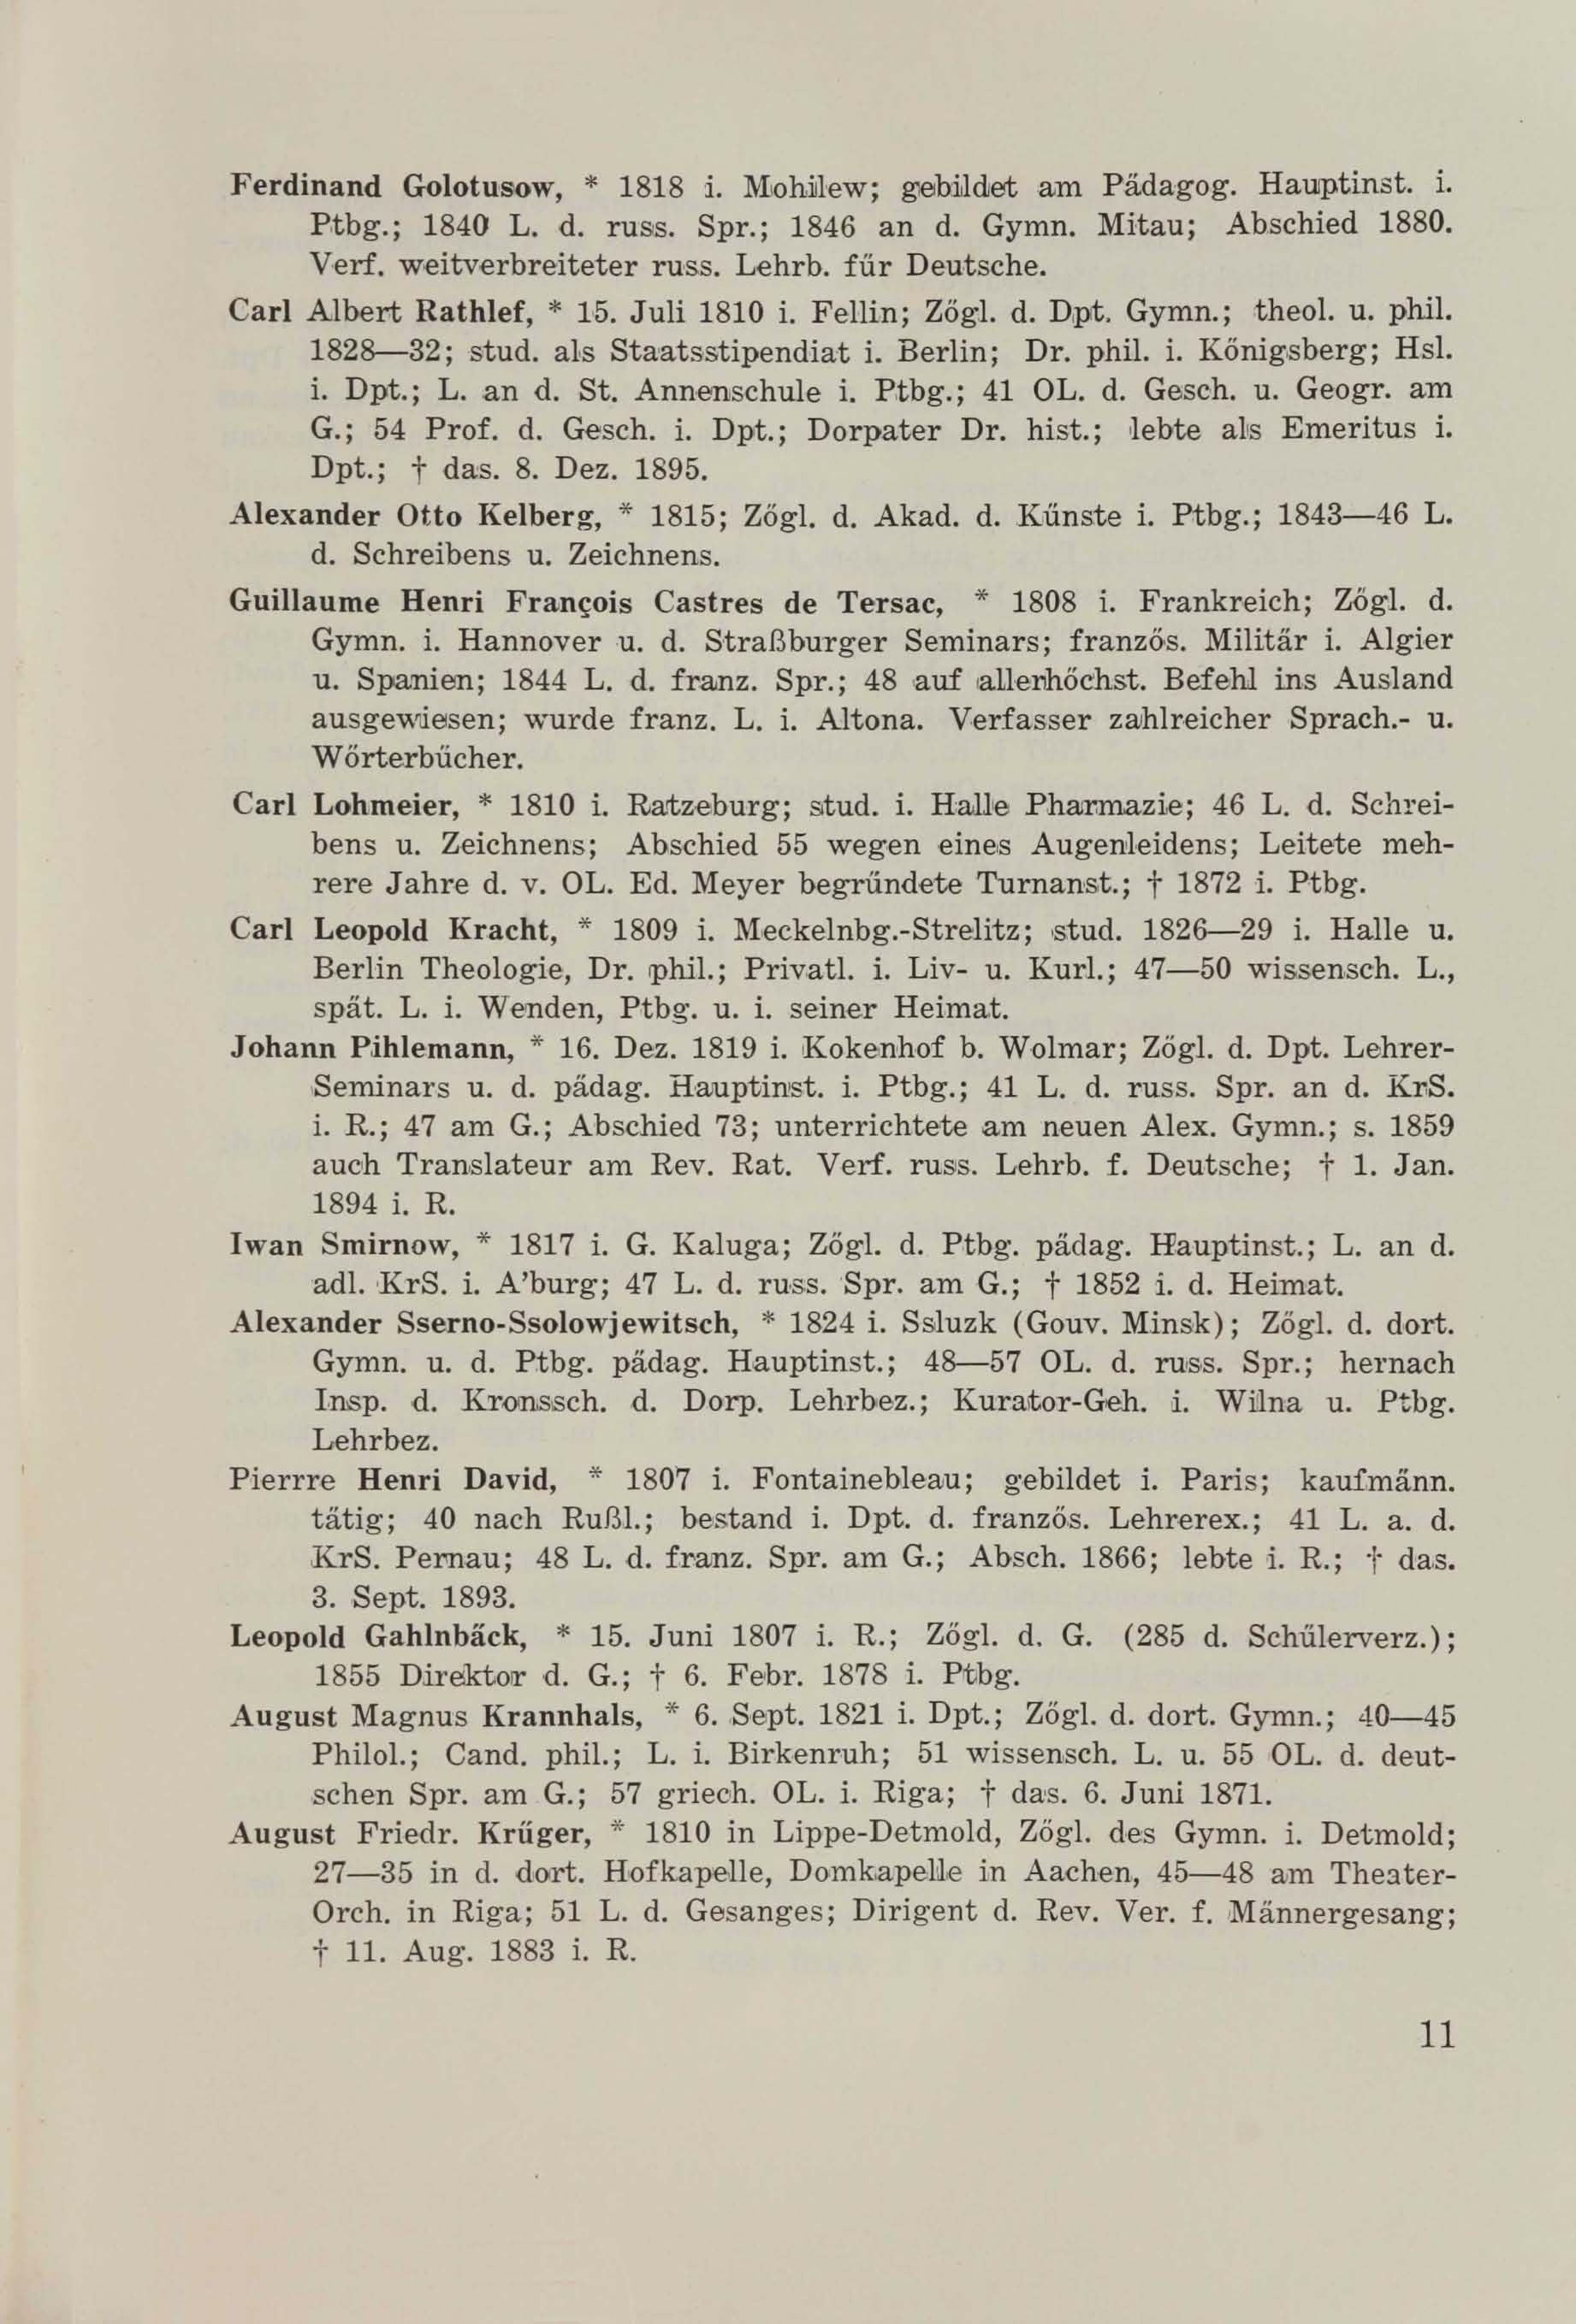 Schüler-Verzeichnis des Revalschen Gouvernements-Gymnasiums 1805–1890 (1931) | 22. (11) Main body of text